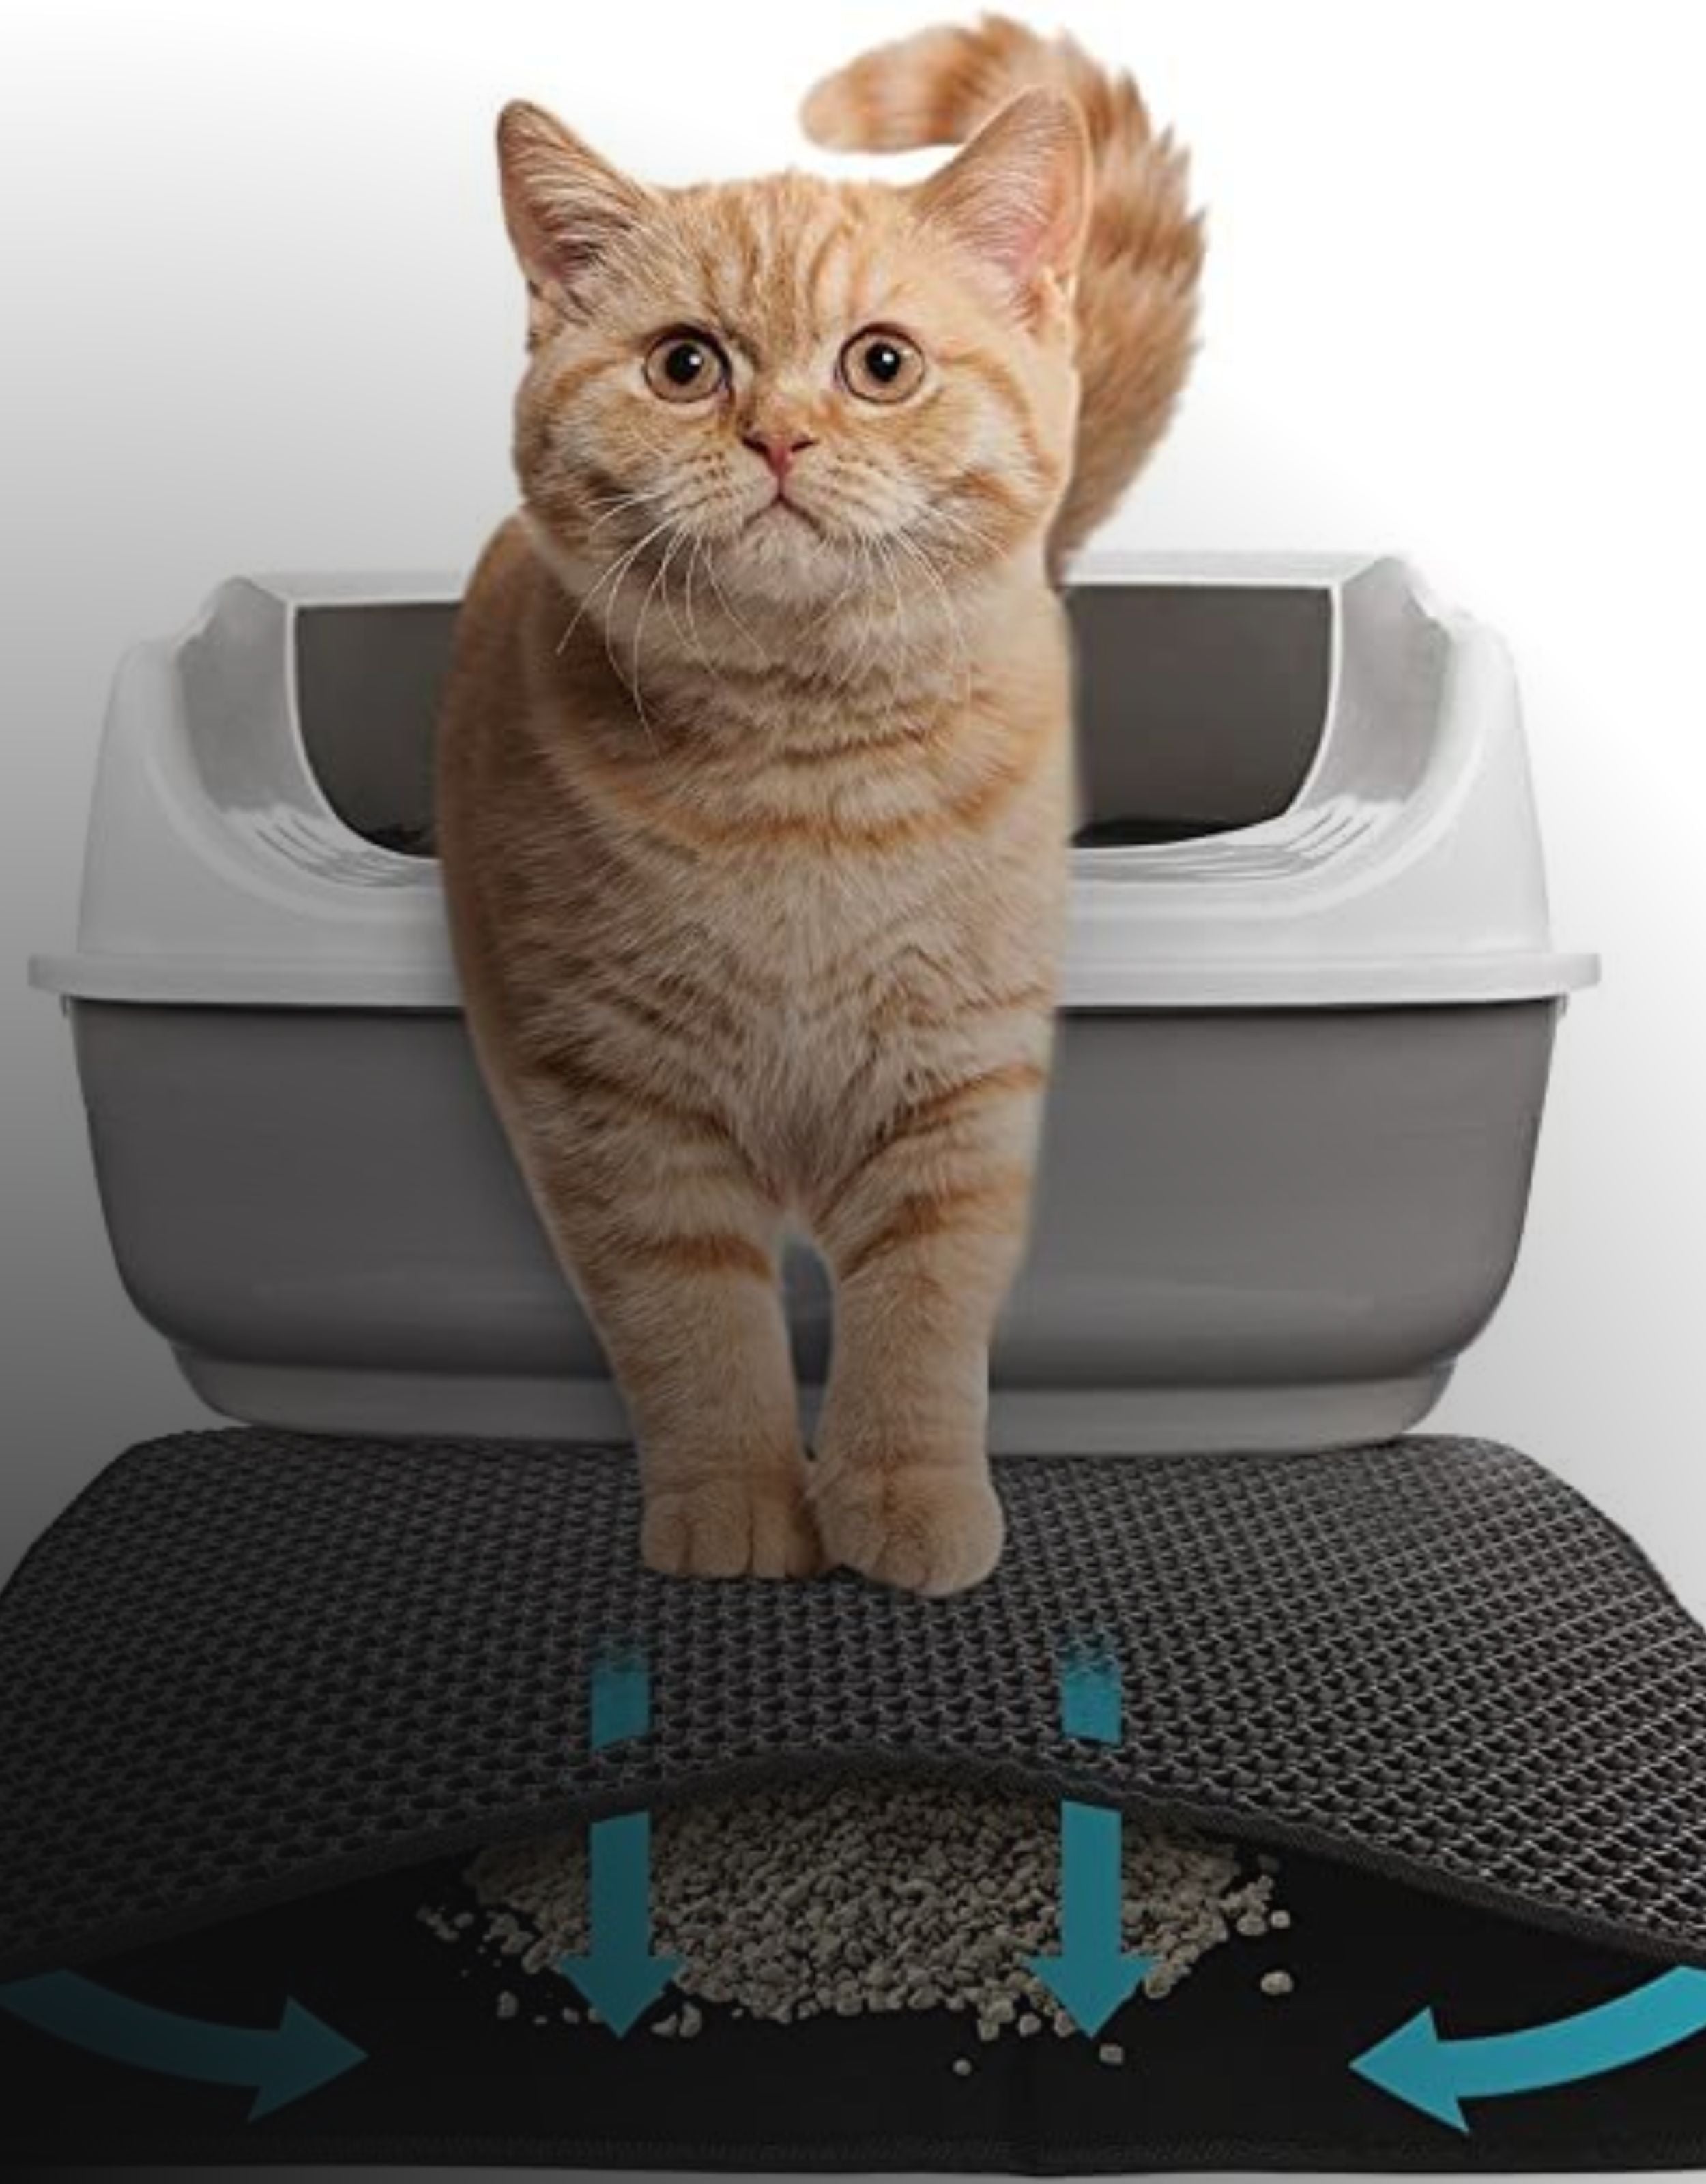 Cat Litter Microfiber Mat- Cat Litterbox Mats